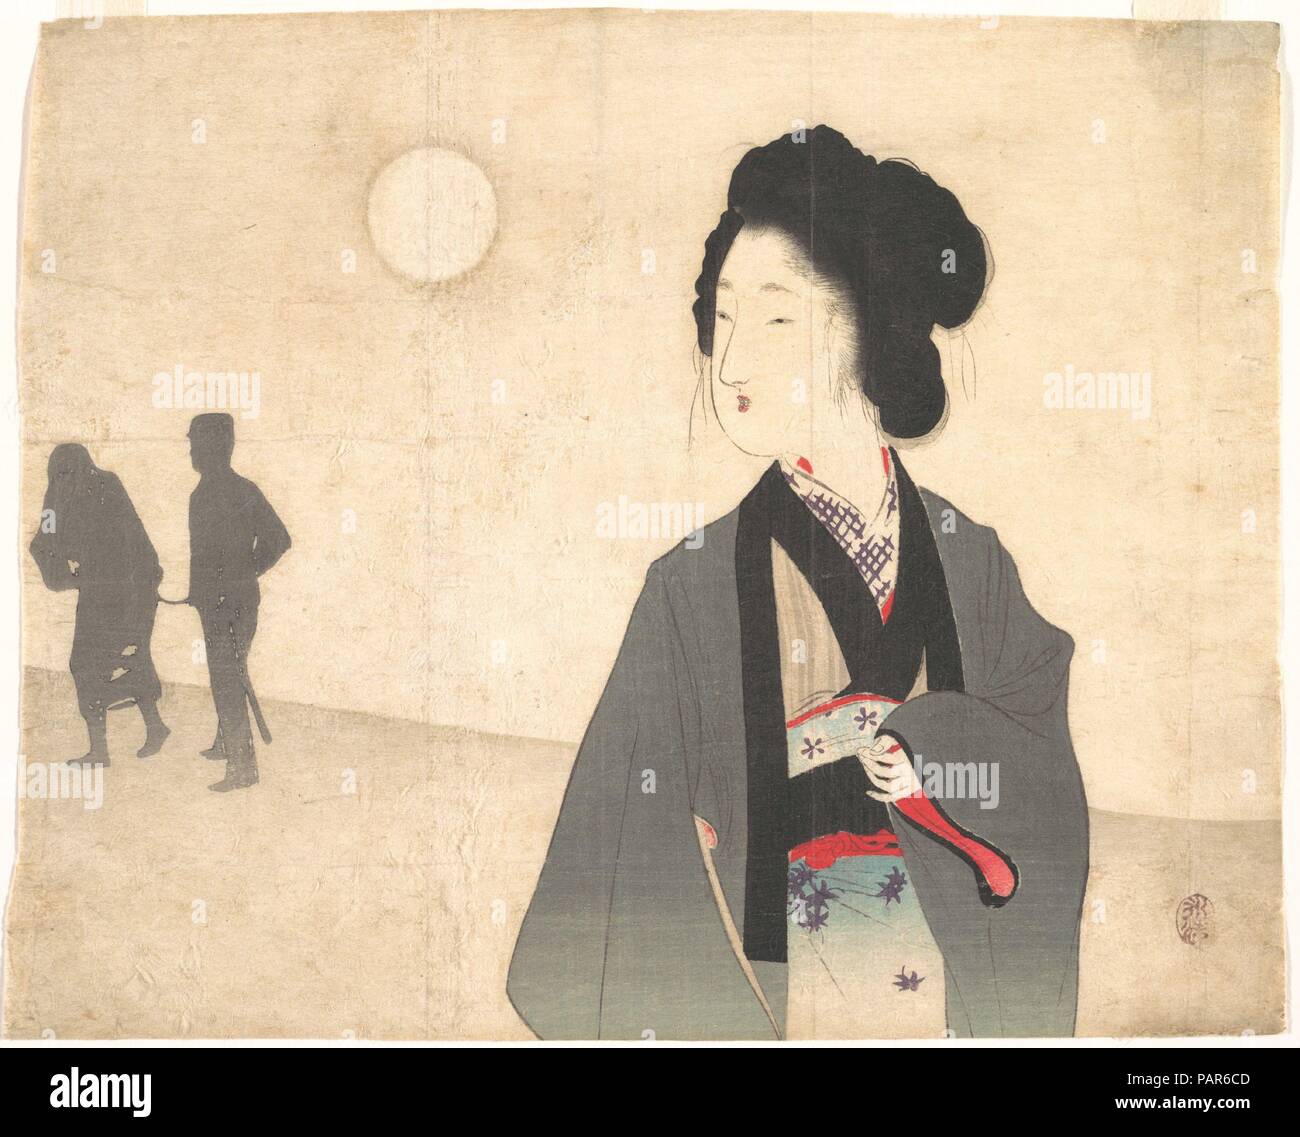 Junge Frau sieht die Silhouette eines männlichen Gefangenen sein Weg führte. Artist: Tomioka Eisen (Japanisch, 1864-1905). Kultur: Japan. Abmessungen: 8 1/2 x 10 3/8 in. (21,6 x 26,4 cm). Datum: Anfang des 20. Jahrhunderts. Die Eisen Drucken zeigt das eher melodramatischen Stimmung als eine Illustration für einen Roman ist typisch für die späten Meiji drucken. Eine Frau Uhren die Silhouetten von Ihrem geliebten weg geführt, die von der Polizei Mann. Die Silhouetten ohne Hintergrund Motive deuten auf einen unerreichbaren Ort von der Frau in der Realität. Museum: Metropolitan Museum of Art, New York, USA. Stockfoto